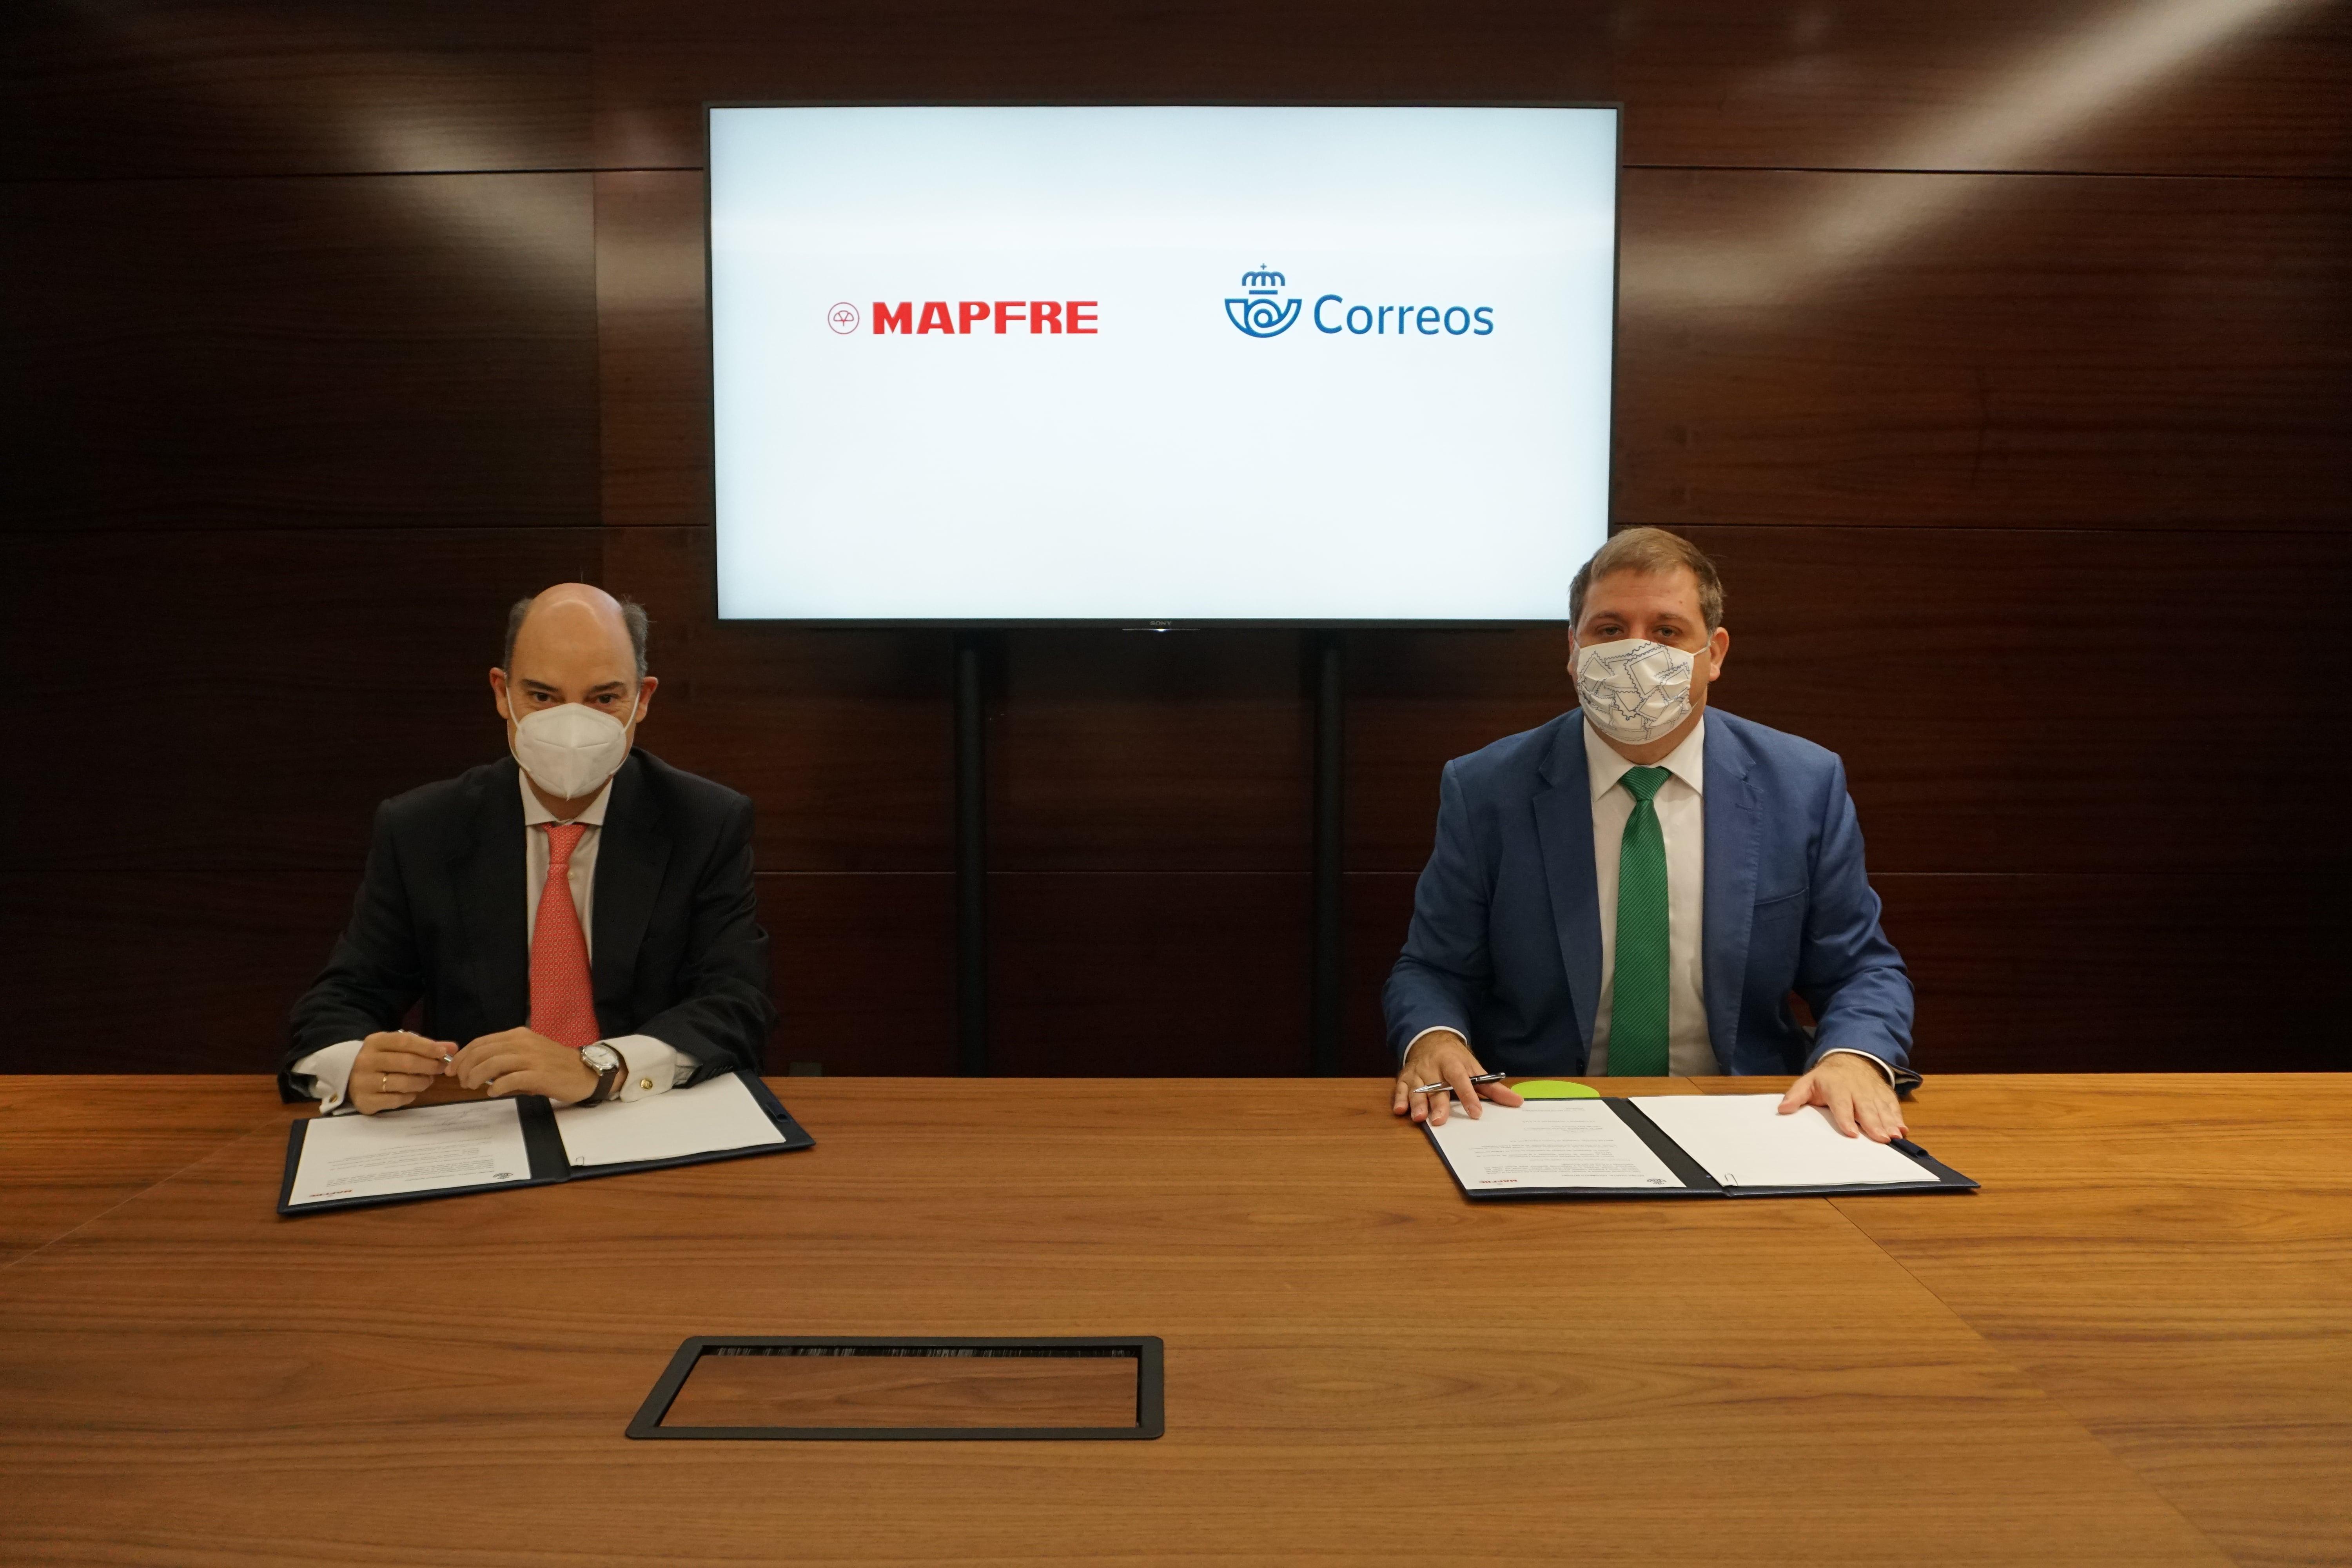 El presidente de Correos, Juan Manuel Serrano, y el vicepresidente de Mapfre y CEO del área territorial Iberia, José Manuel Inchausti, firman el acuerdo de colaboración